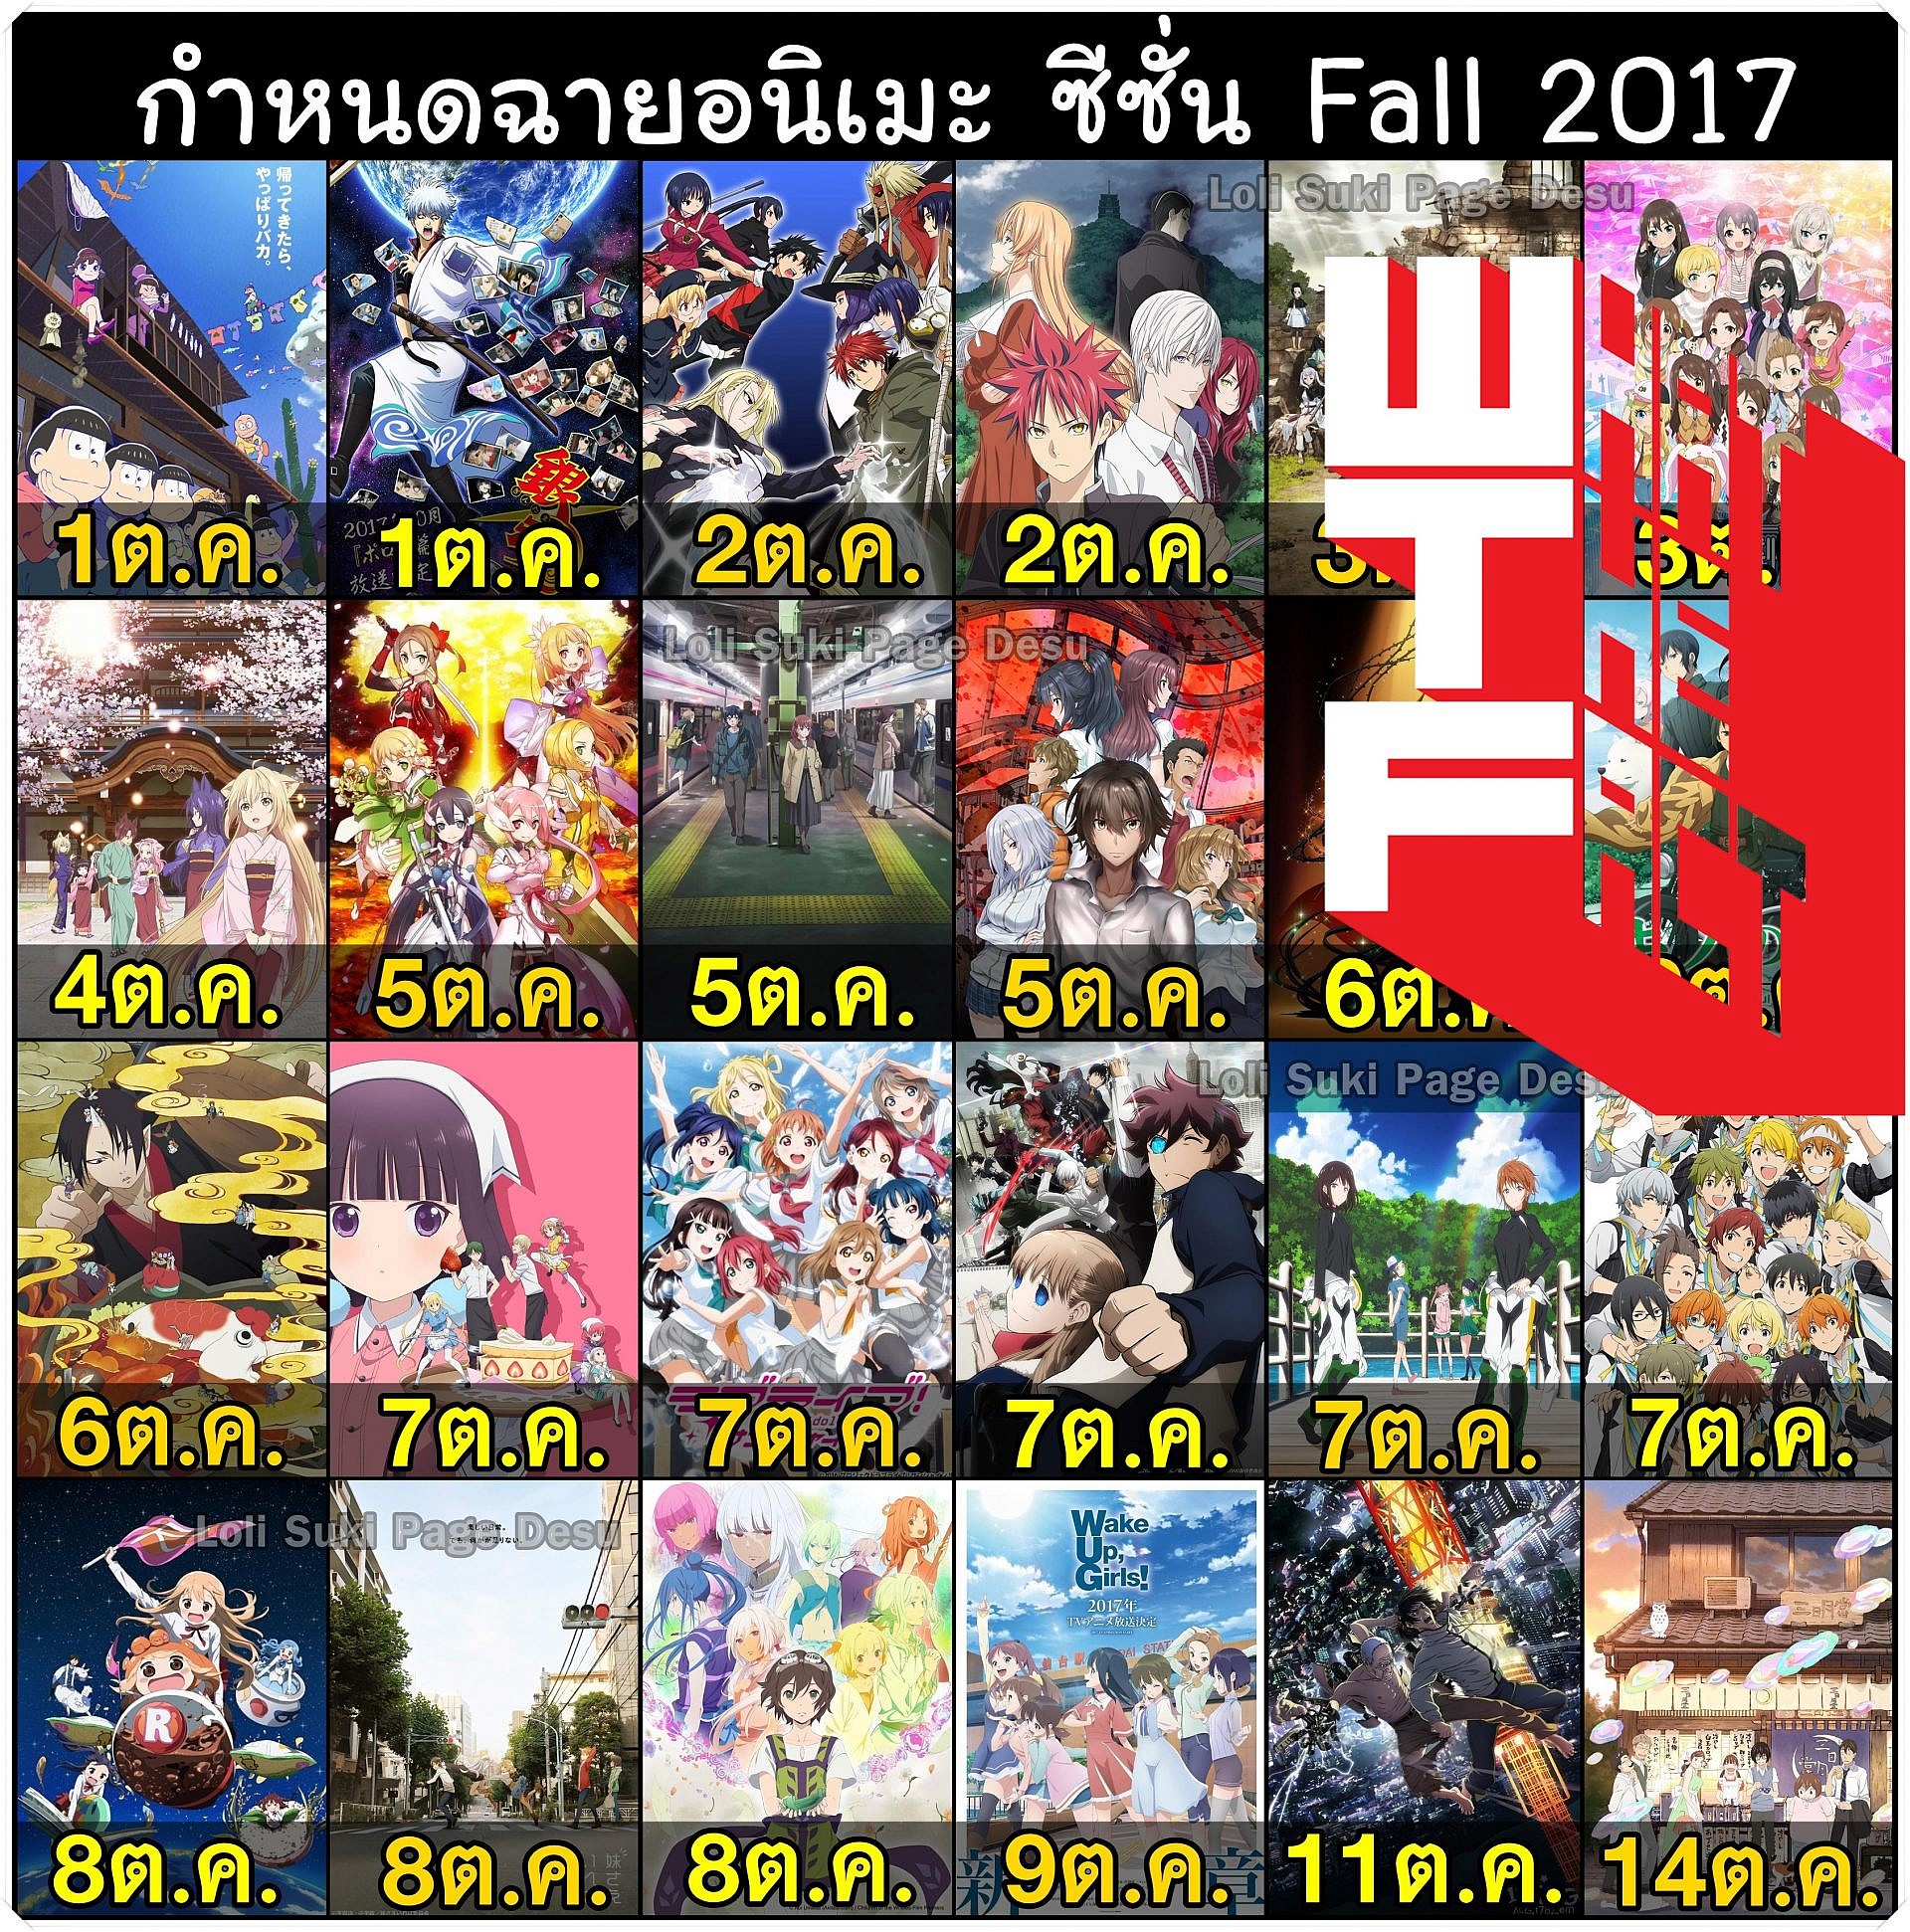 Anime Season Fall 2017 มาดูกันว่าช่วงฤดูใบไม้ร่วงของประเทศญี่ปุ่นมีอนิเมะอะไรที่น่าสนใจกันบ้าง